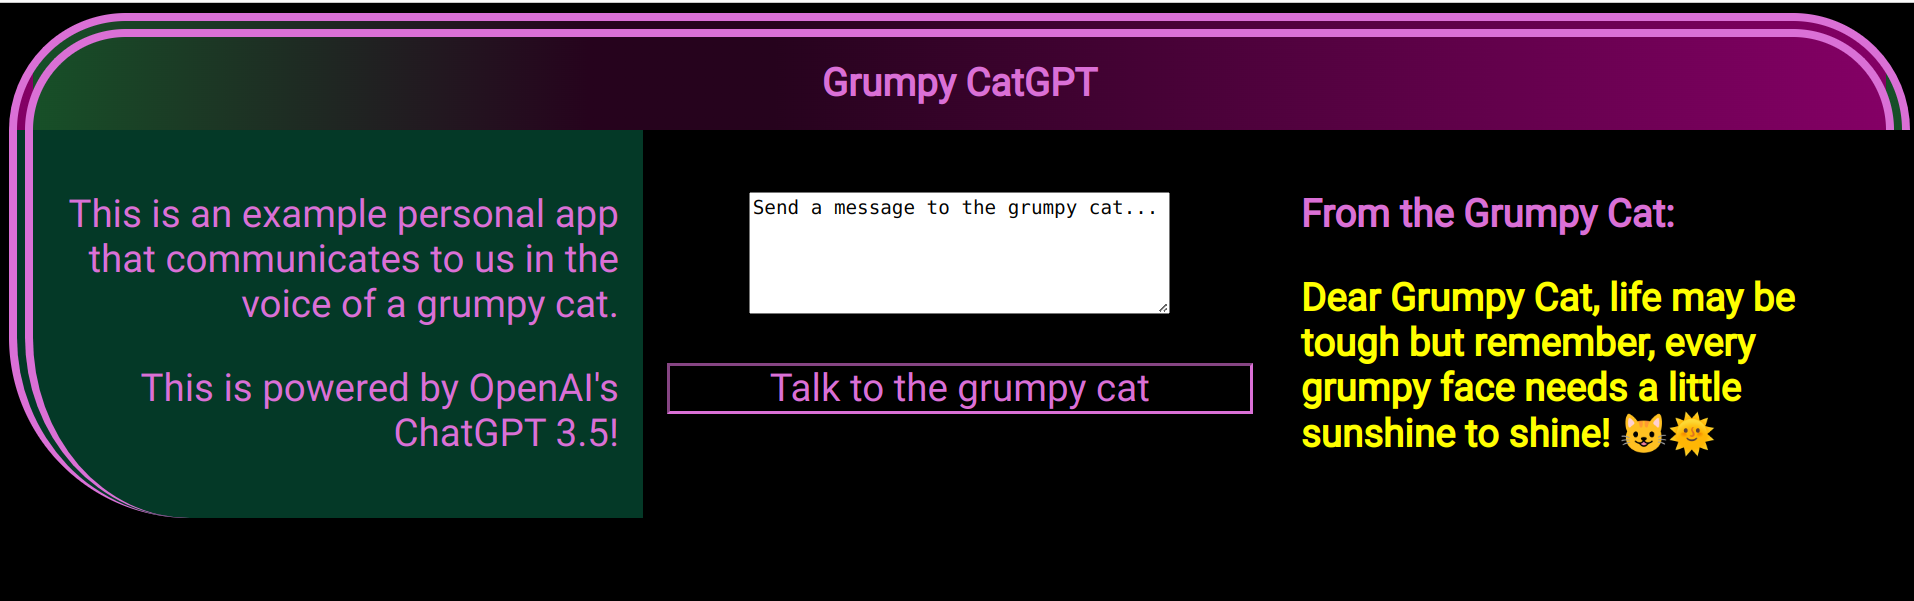 Grumpy CatGPT App Screen Shot